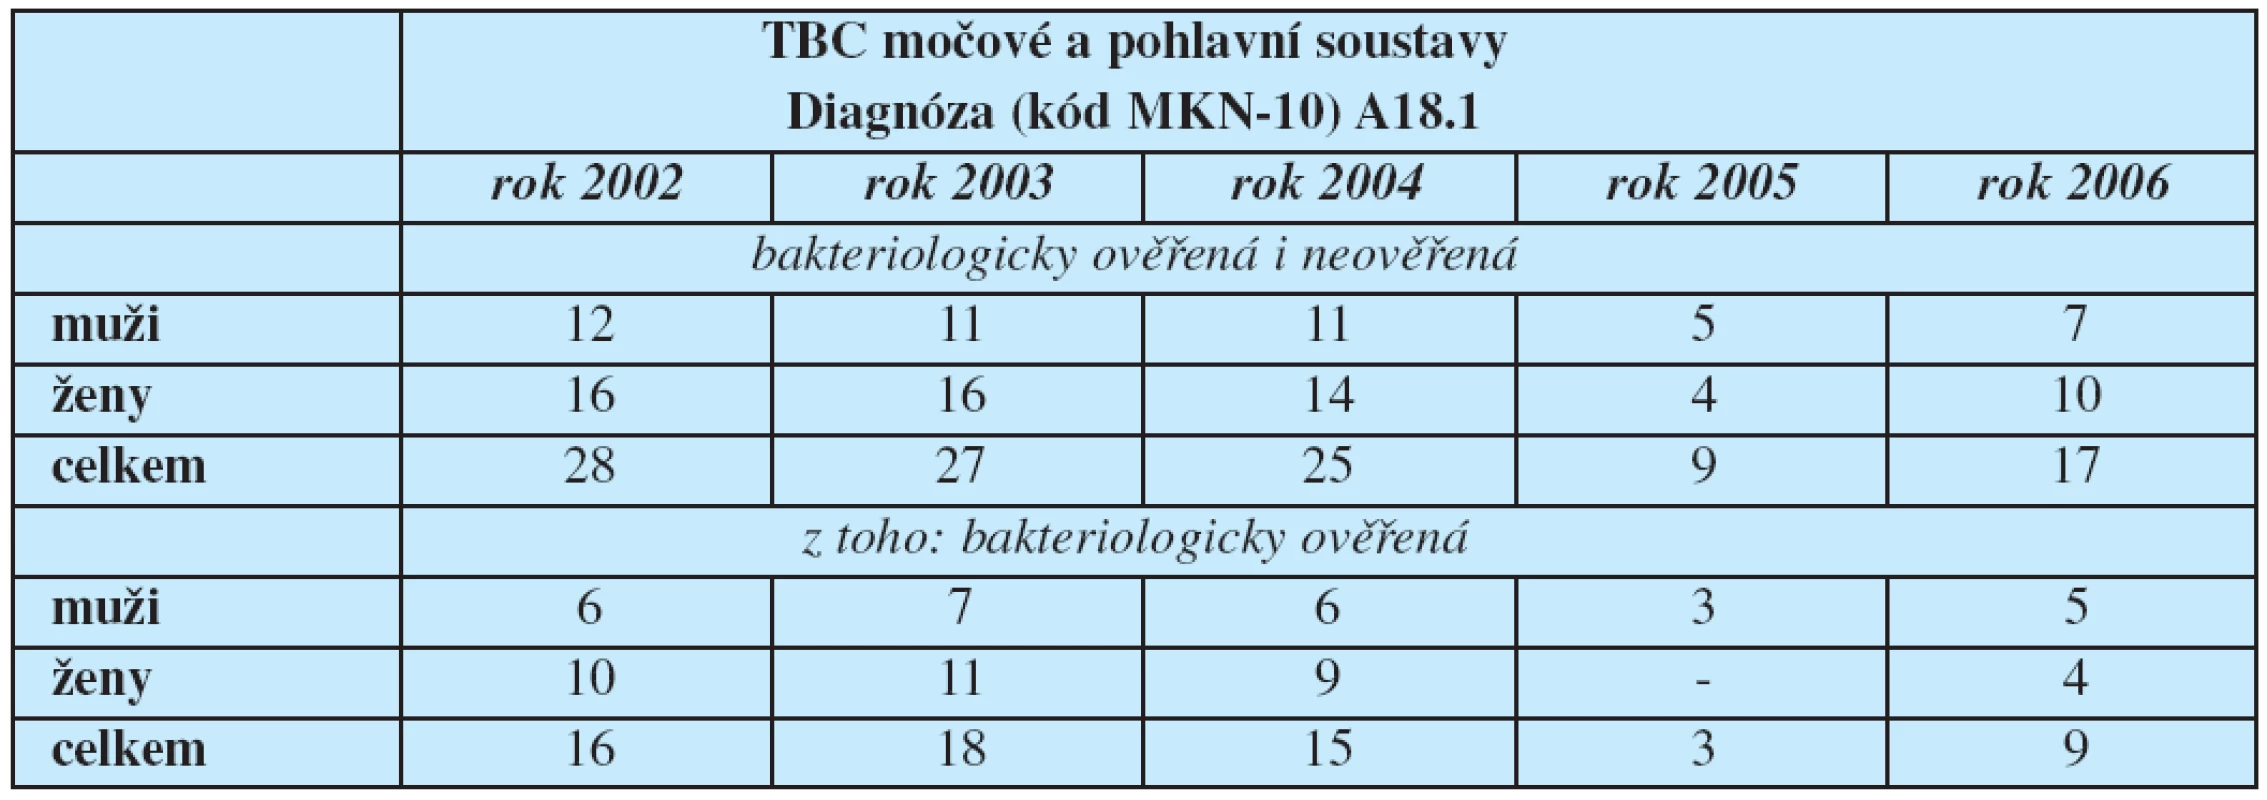 Hlášená onemocnění tuberkulózy močové a pohlavní soustavy podle klasifikační diagnózy (MKN-10)